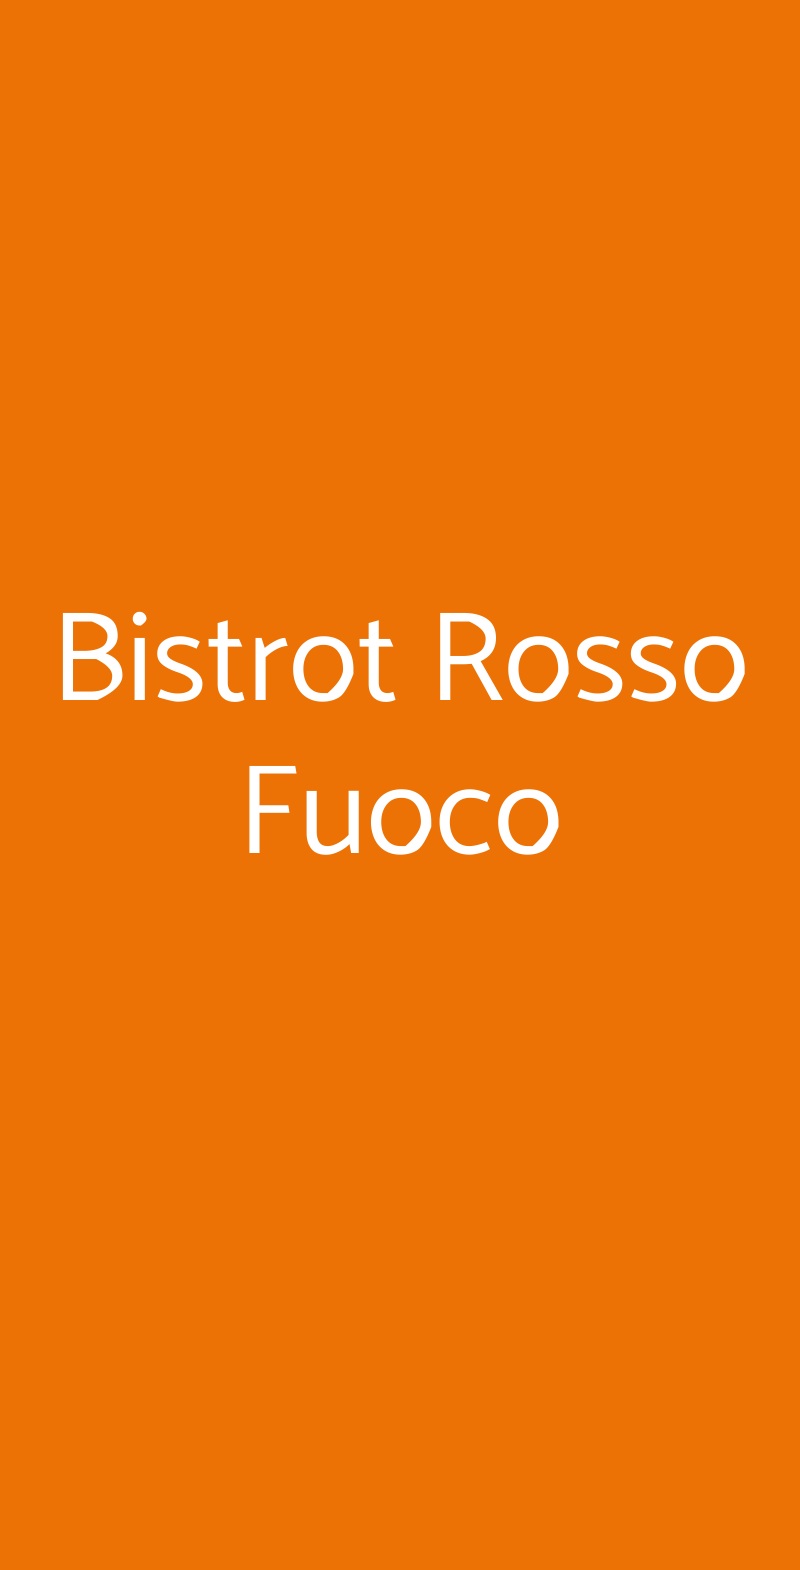 Bistrot Rosso Fuoco Bologna menù 1 pagina